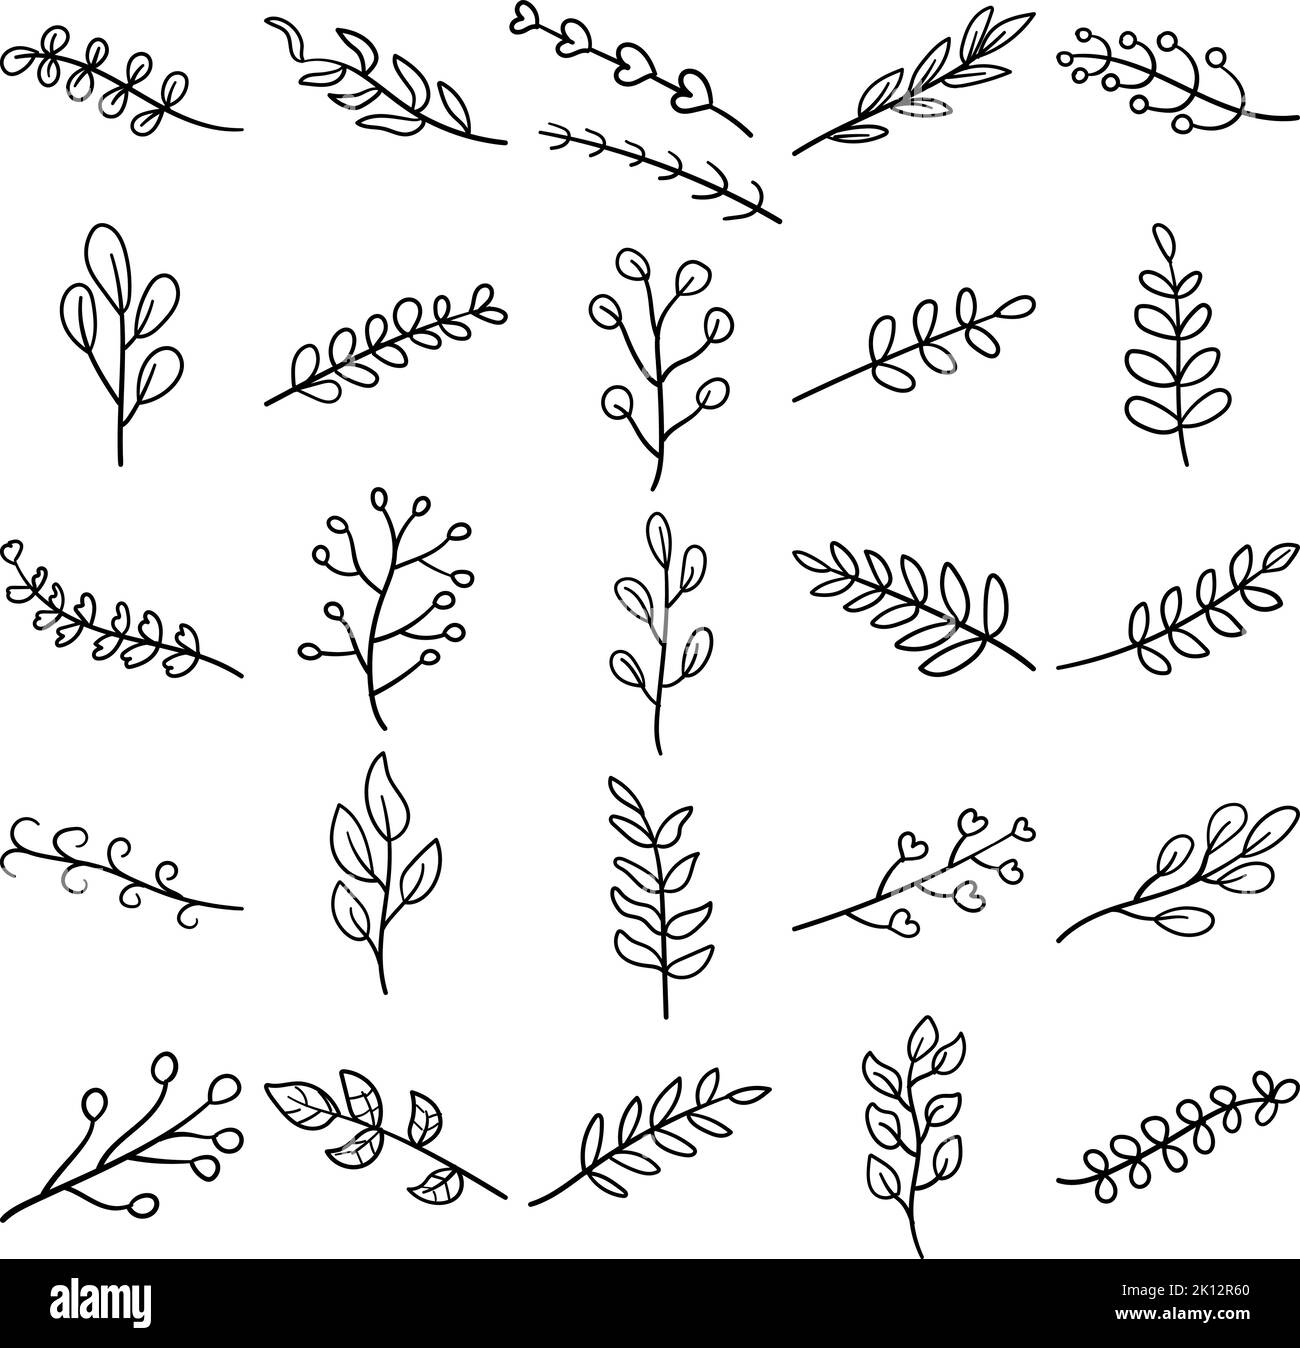 Pflanzen Handgezeichnete Doodle Line Art Outline Set mit Blumen, Gras, Kraut, Keimling, Strauch, Baum, Rebe, Unkraut, jährlich, alle zwei Jahre, bush, Kriechgang, Cutt Stock Vektor